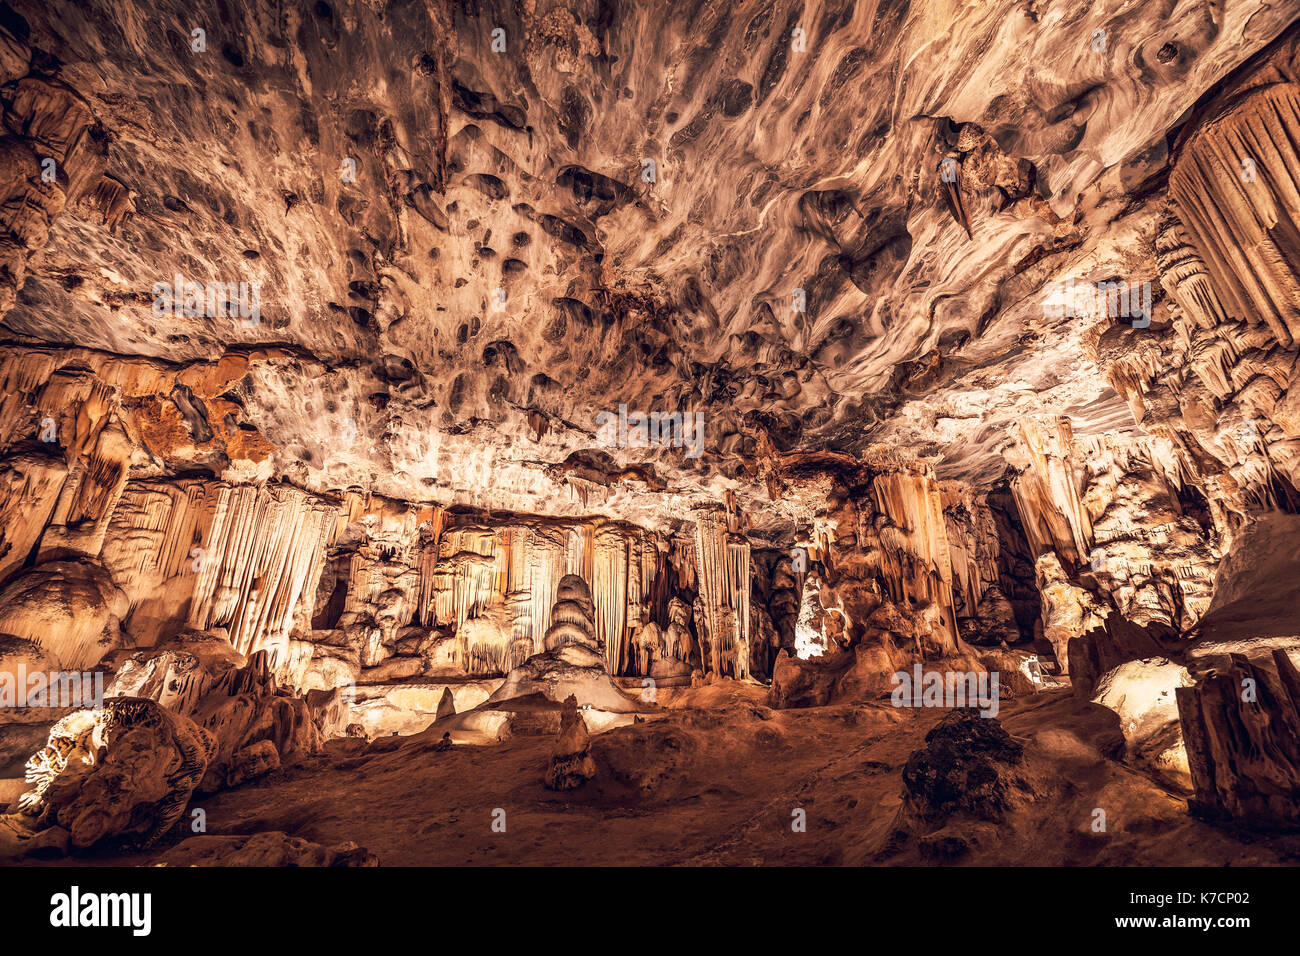 Tolle Aussicht von einem Cango Caves, einer herrlichen Stalaktiten und Stalagmiten Höhle, berühmten Attraktion, die herrliche Natur von Südafrika Stockfoto